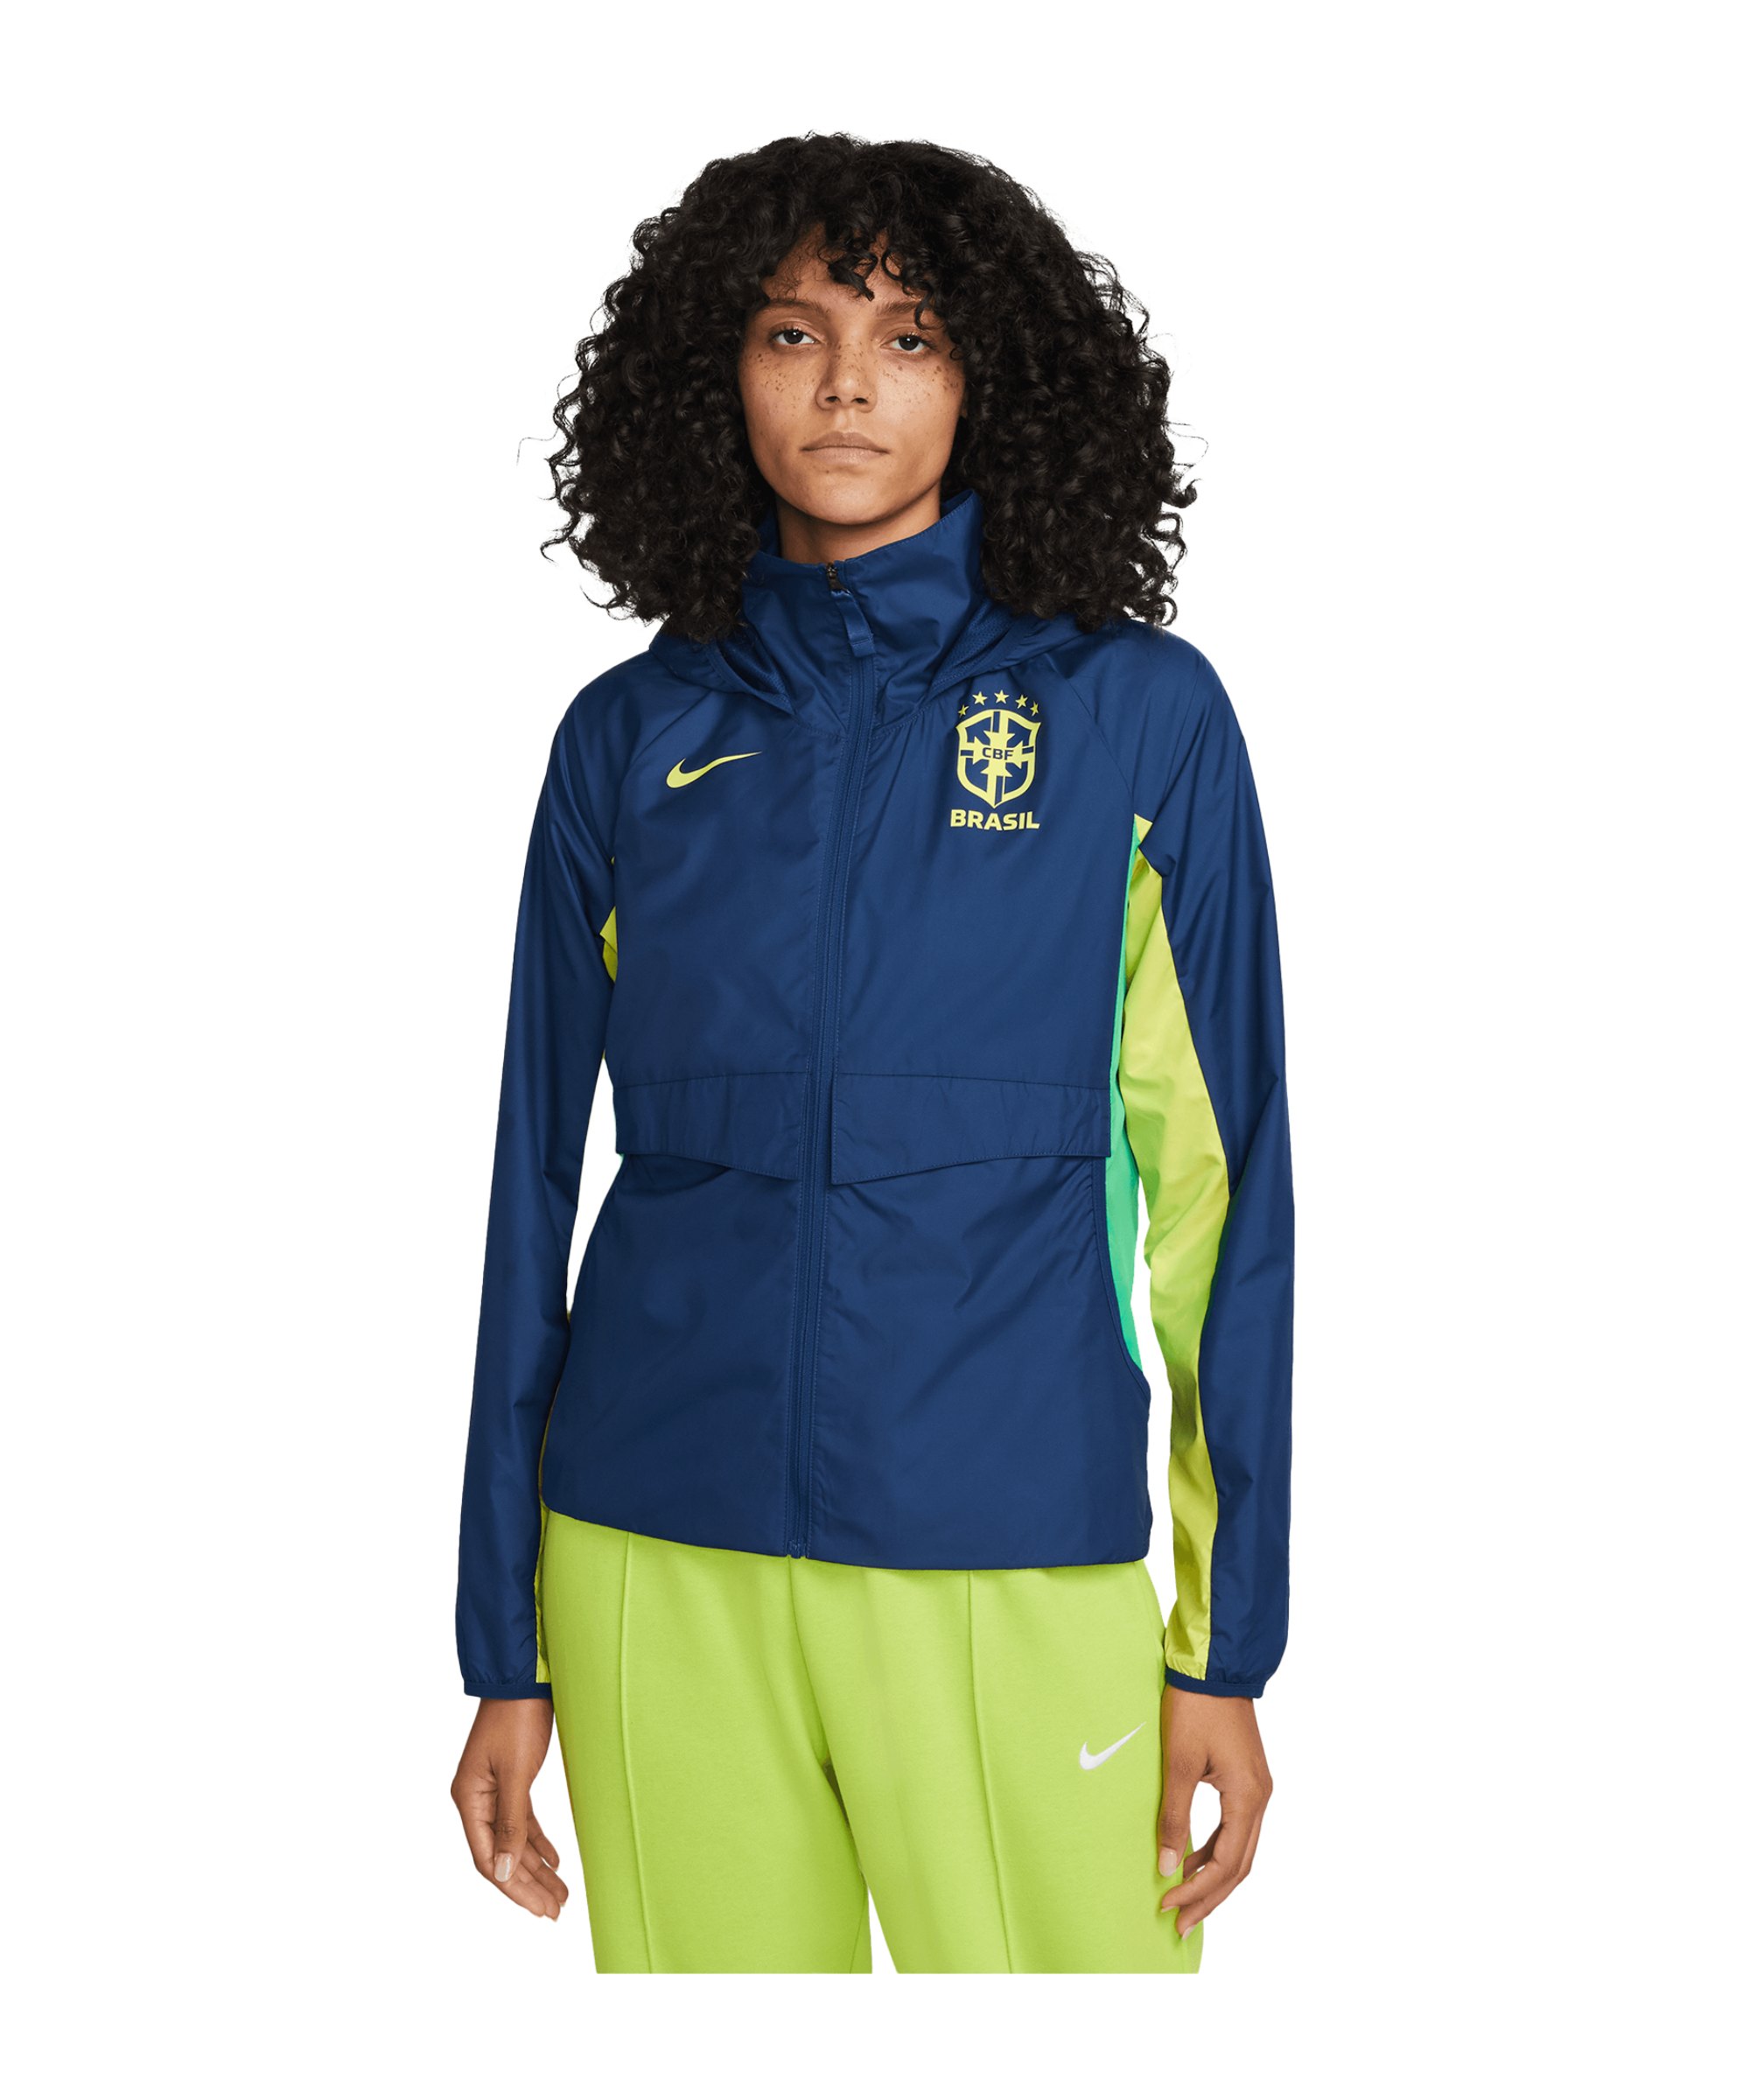 Nike Brasilien Allwetterjacke Damen Blau F490 - dunkelblau